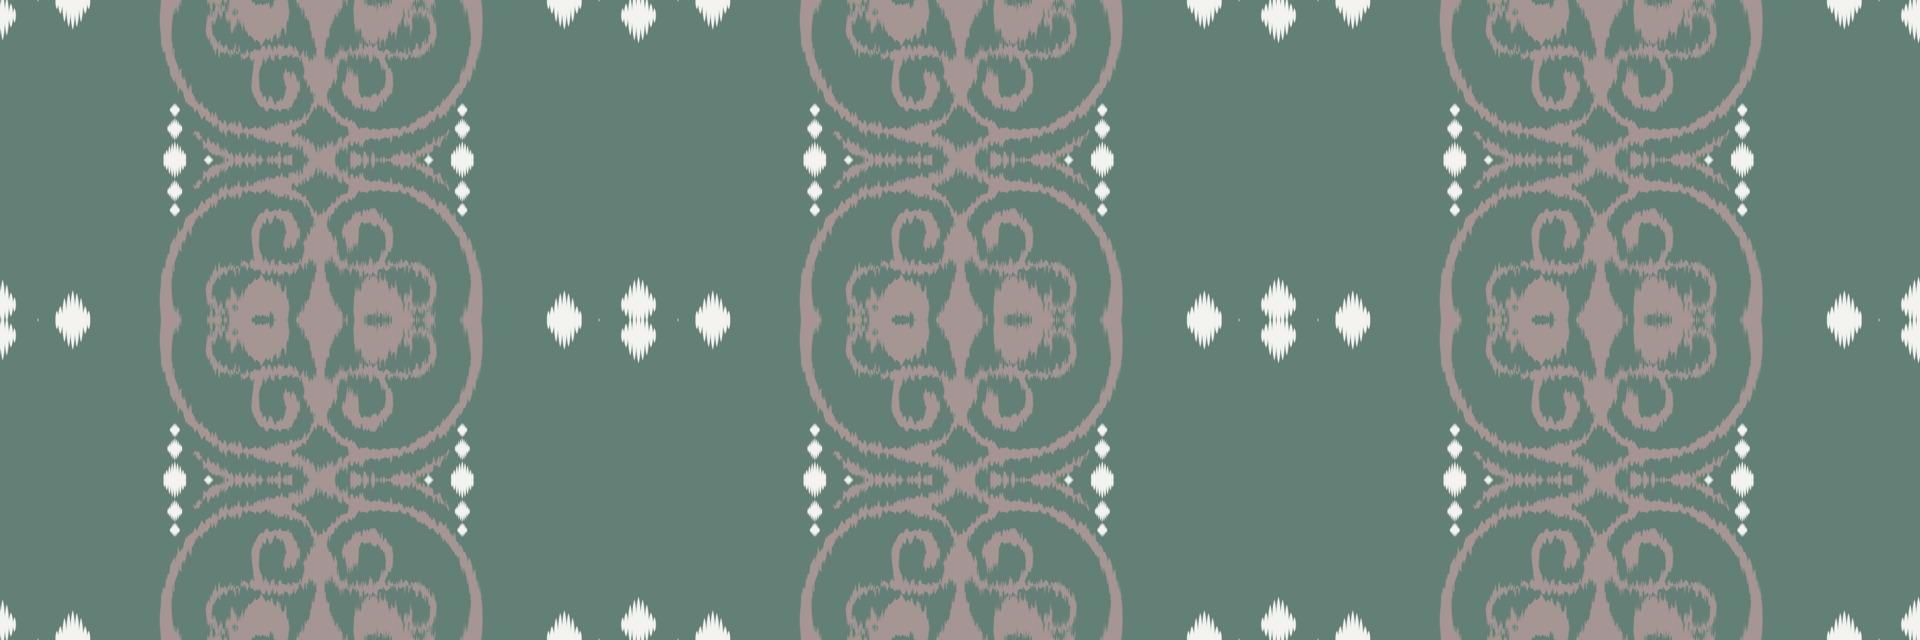 batik textil- etnisk ikat mönster sömlös mönster digital vektor design för skriva ut saree kurti borneo tyg gräns borsta symboler färgrutor eleganta